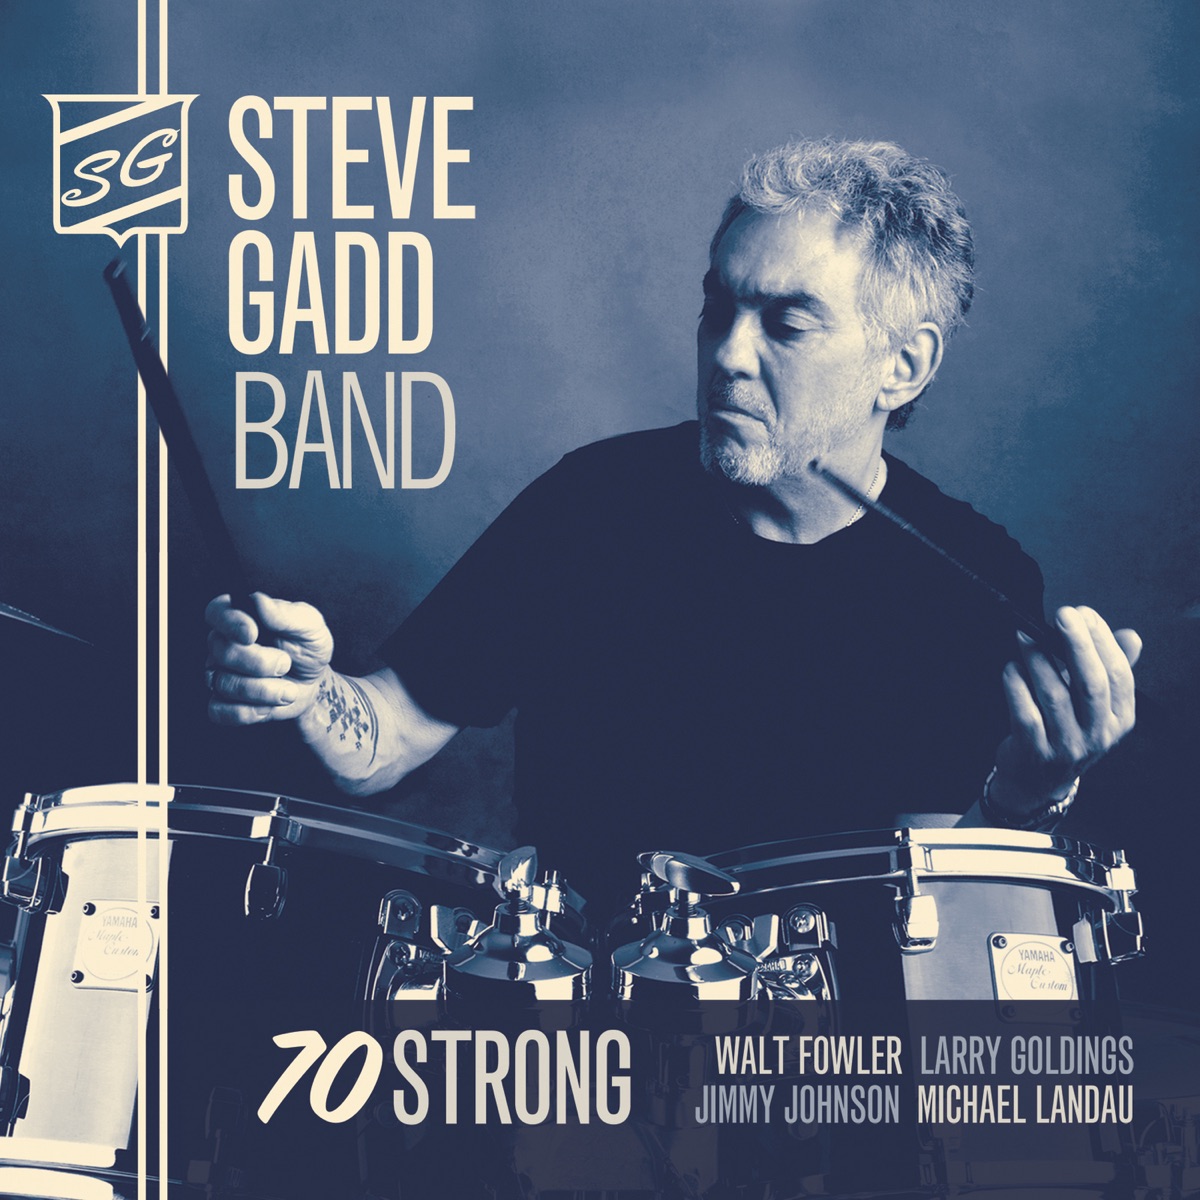 Steve Gadd Band - 70 Strong